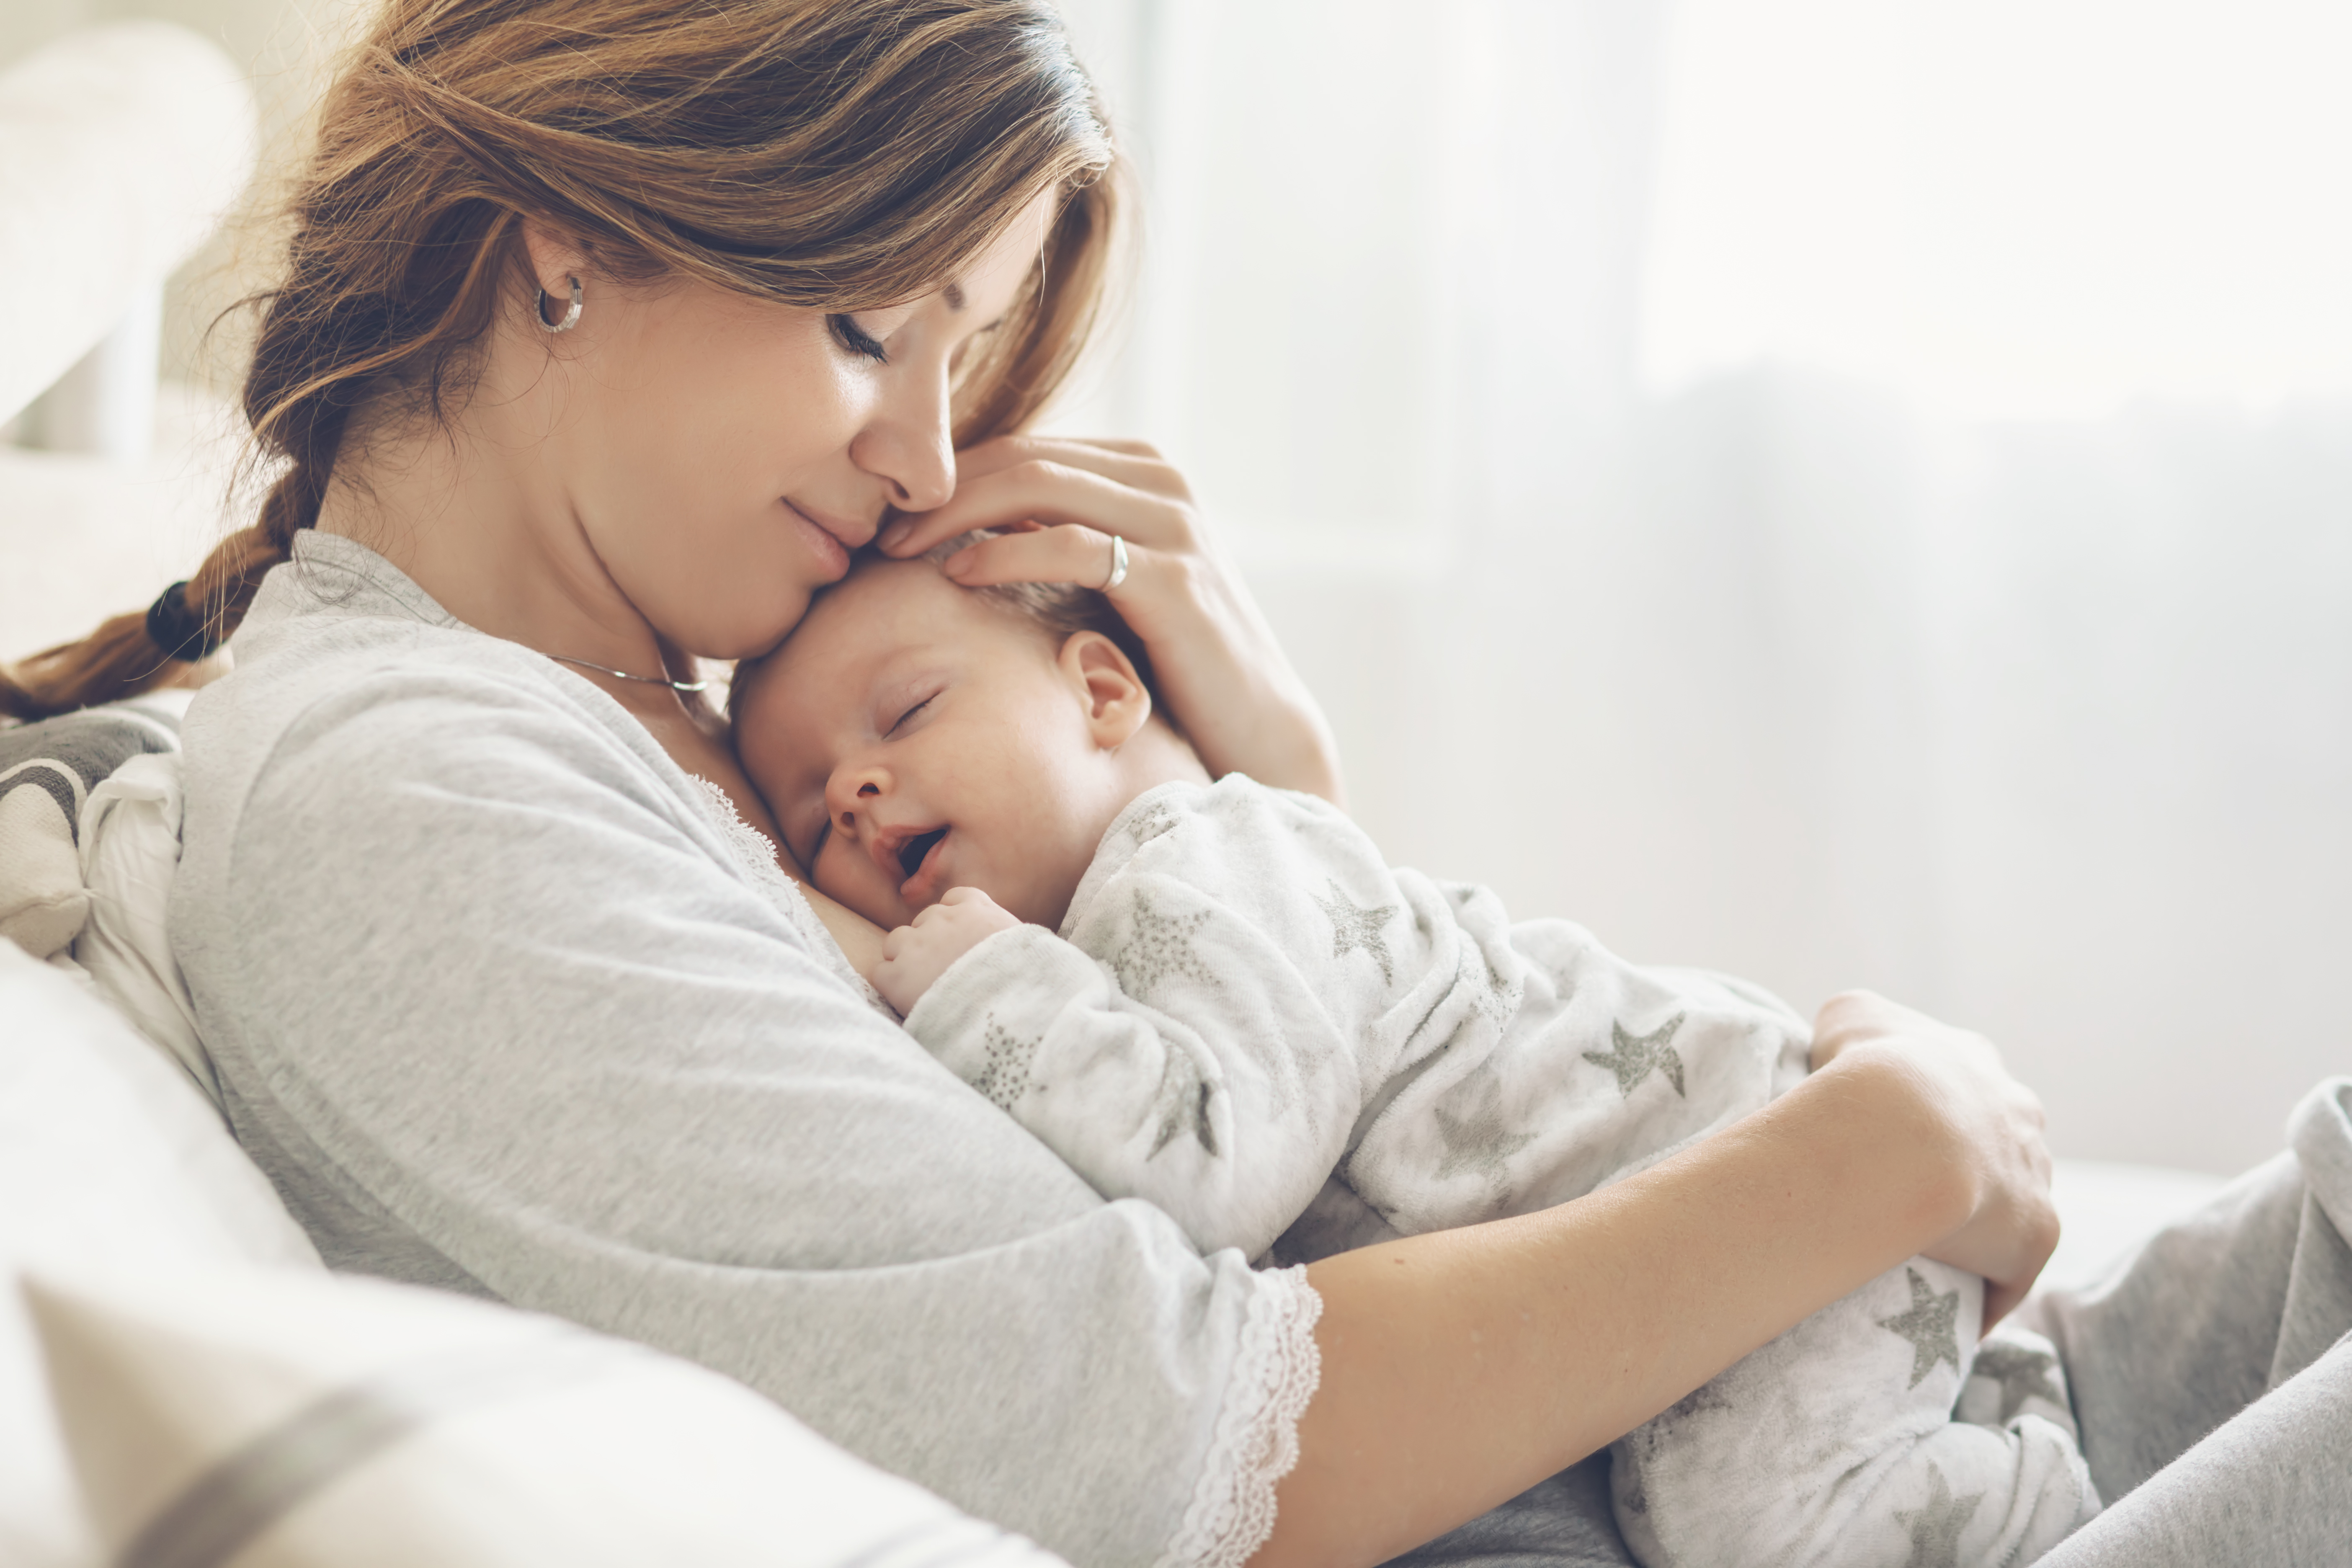 Una mujer abrazando a un recién nacido. | Foto: Shutterstock